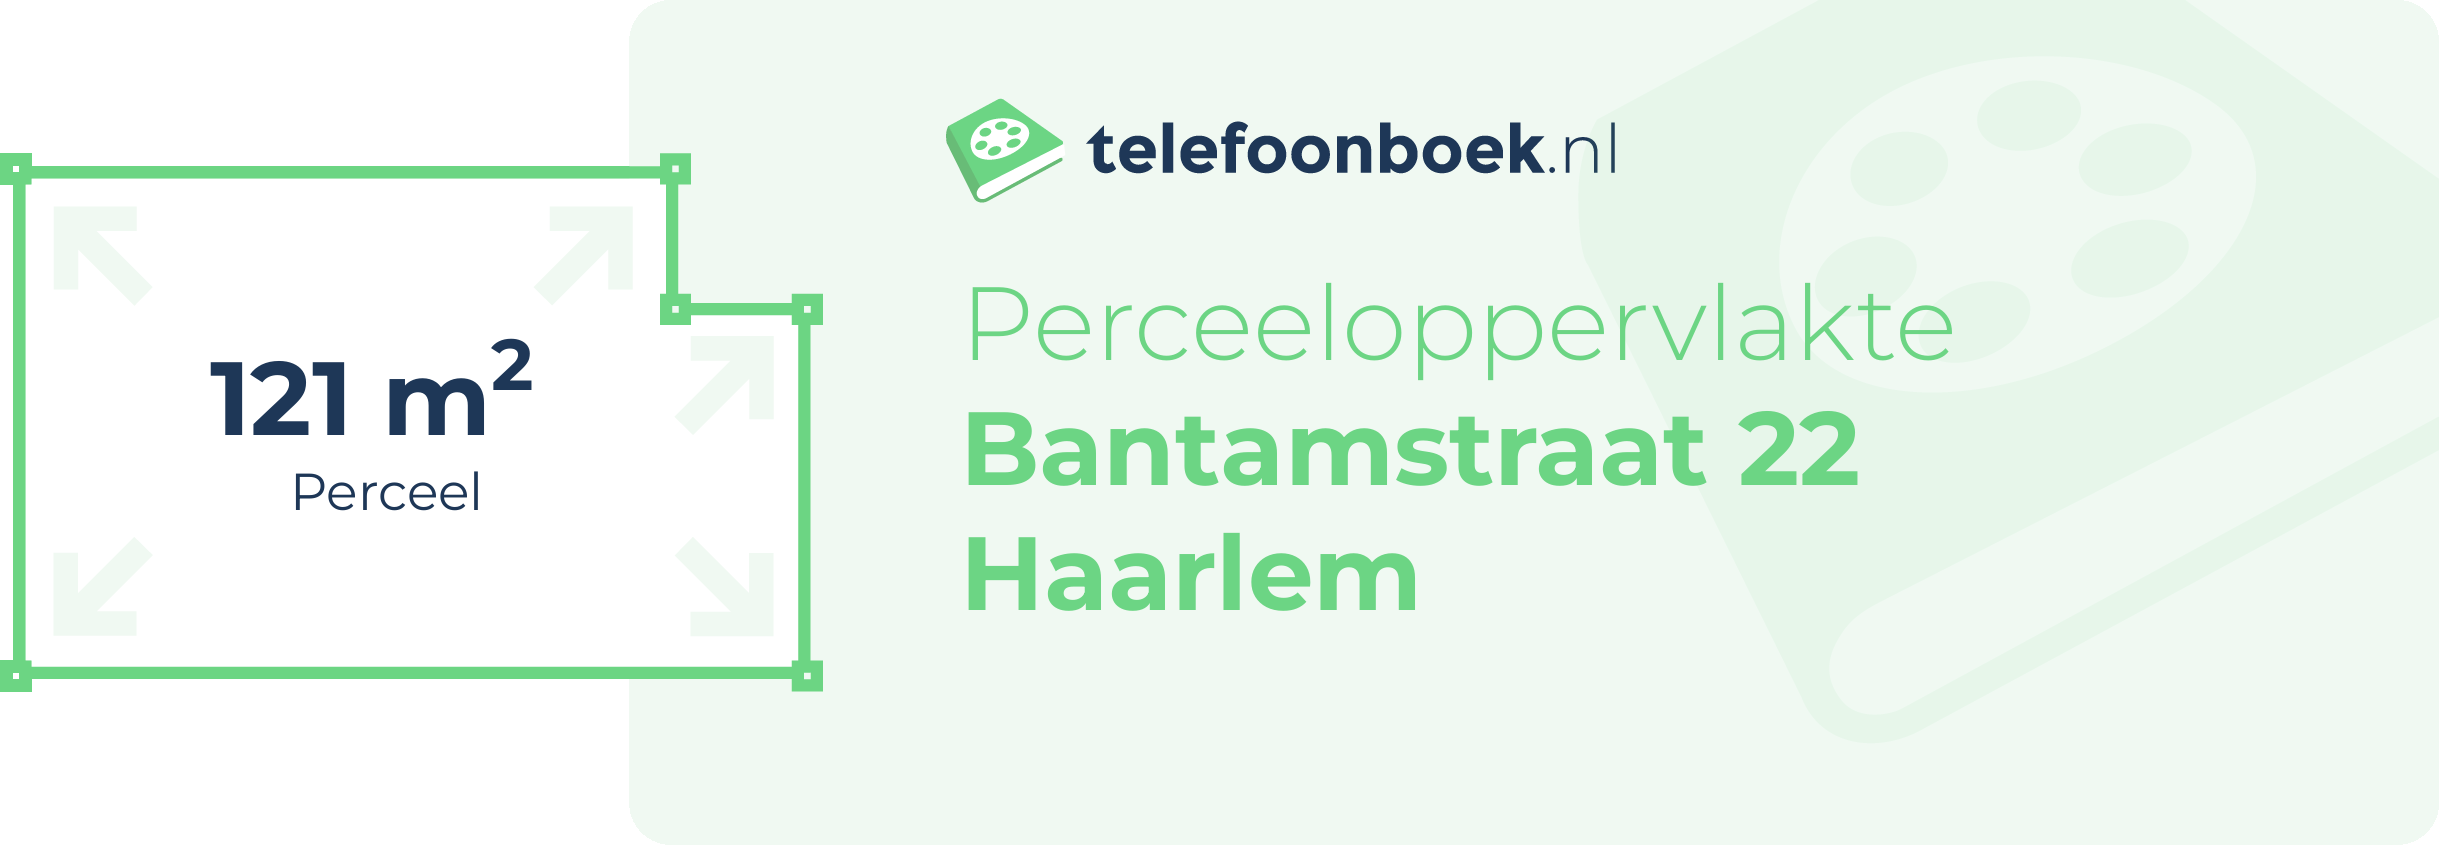 Perceeloppervlakte Bantamstraat 22 Haarlem